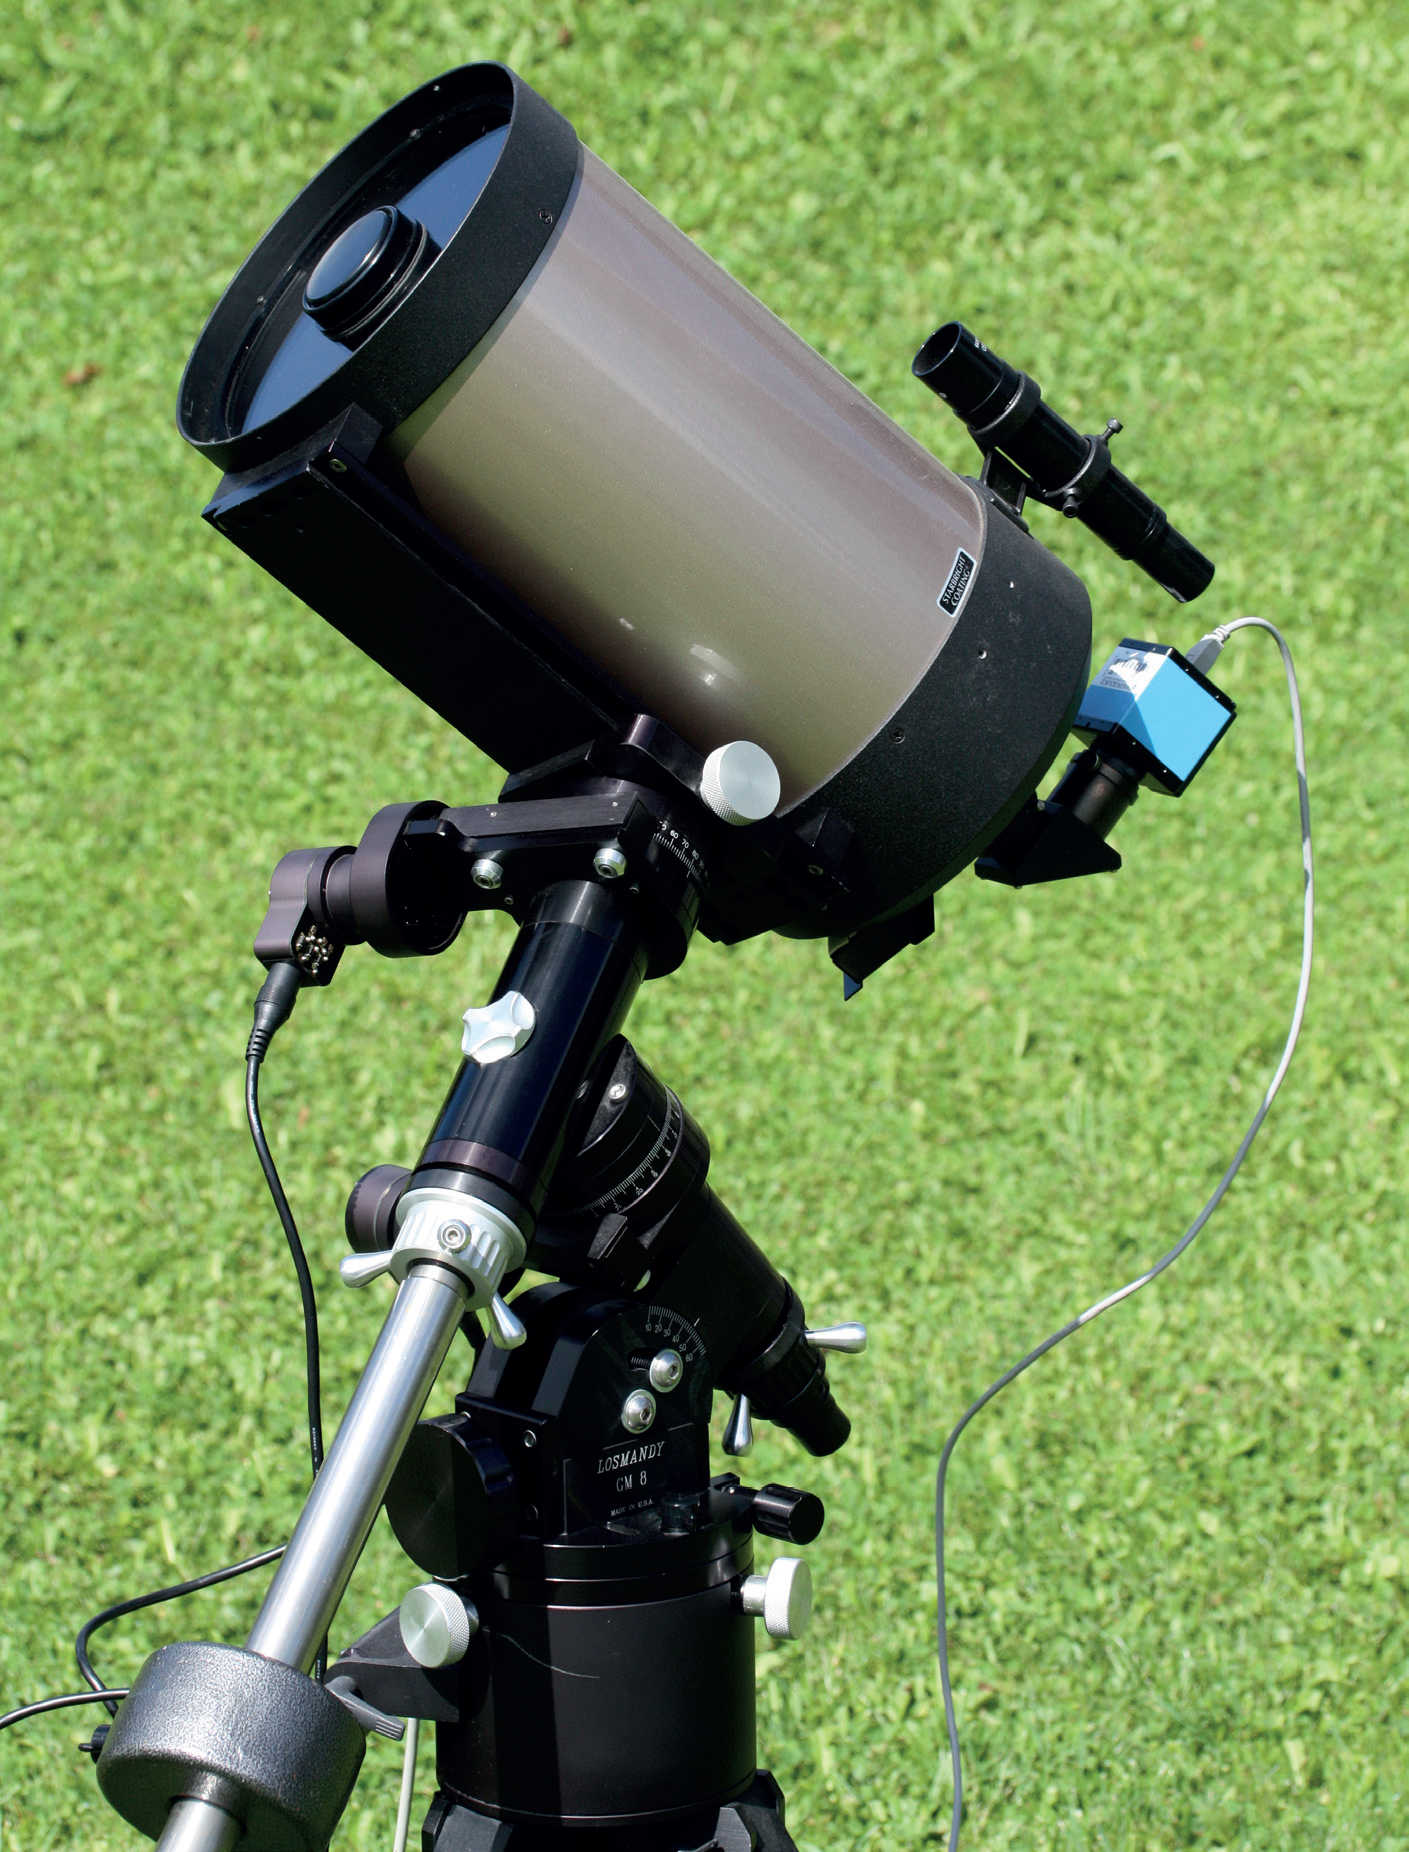 Les télescopes compacts d’une longue distance focale, par exemple le Schmidt-Cassegrain illustré ici, conviennent parfaitement pour photographier les planètes. La monture allemande motorisée permet un suivi précis de l’unité optique et également, ainsi, des séquences d’exposition plus longues avec la caméra CCD qui lui est raccordée. U. Dittler